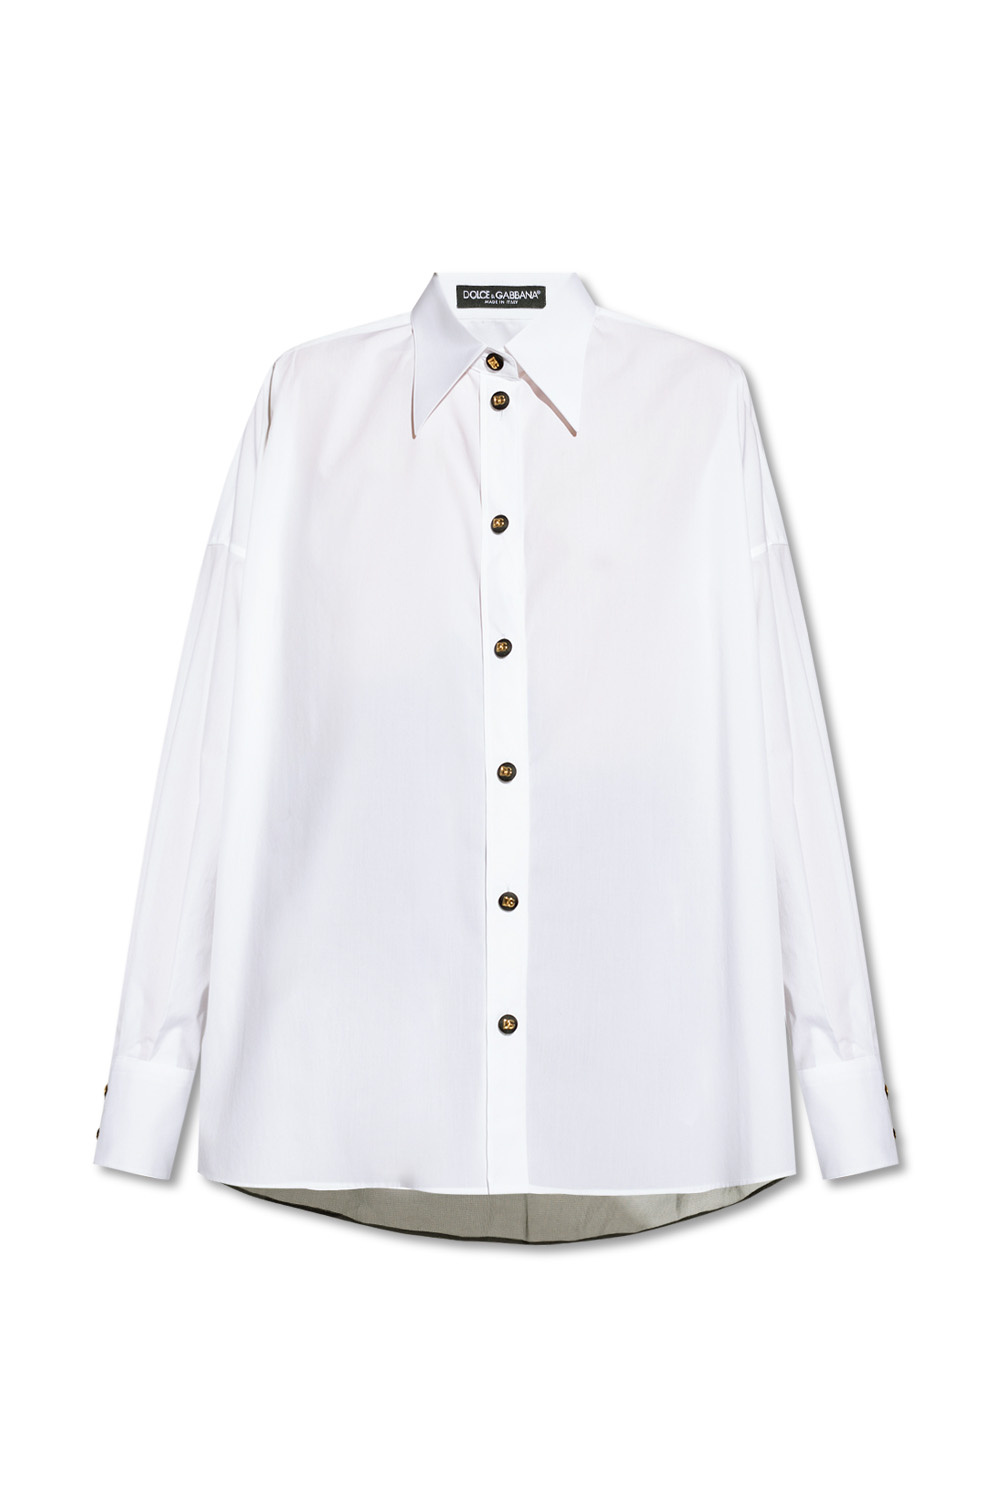 Dolce ☀ Gabbana Shirt with sheer back ...